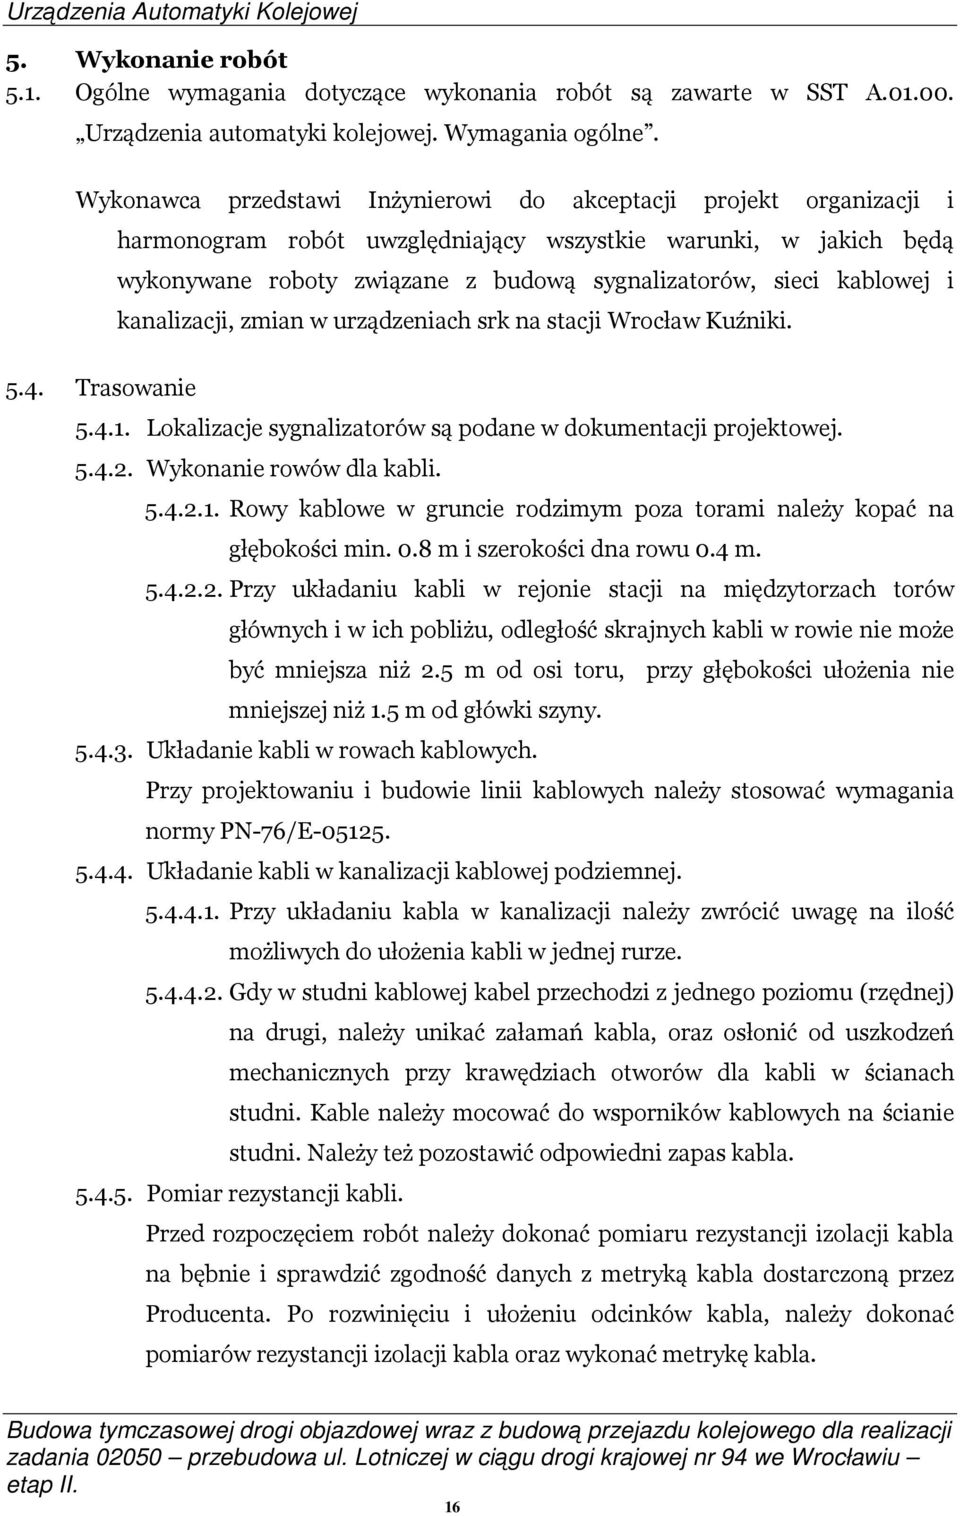 kablowej i kanalizacji, zmian w urządzeniach srk na stacji Wrocław Kuźniki. 5.4. Trasowanie 5.4.1. Lokalizacje sygnalizatorów są podane w dokumentacji projektowej. 5.4.2. Wykonanie rowów dla kabli. 5.4.2.1. Rowy kablowe w gruncie rodzimym poza torami należy kopać na głębokości min.